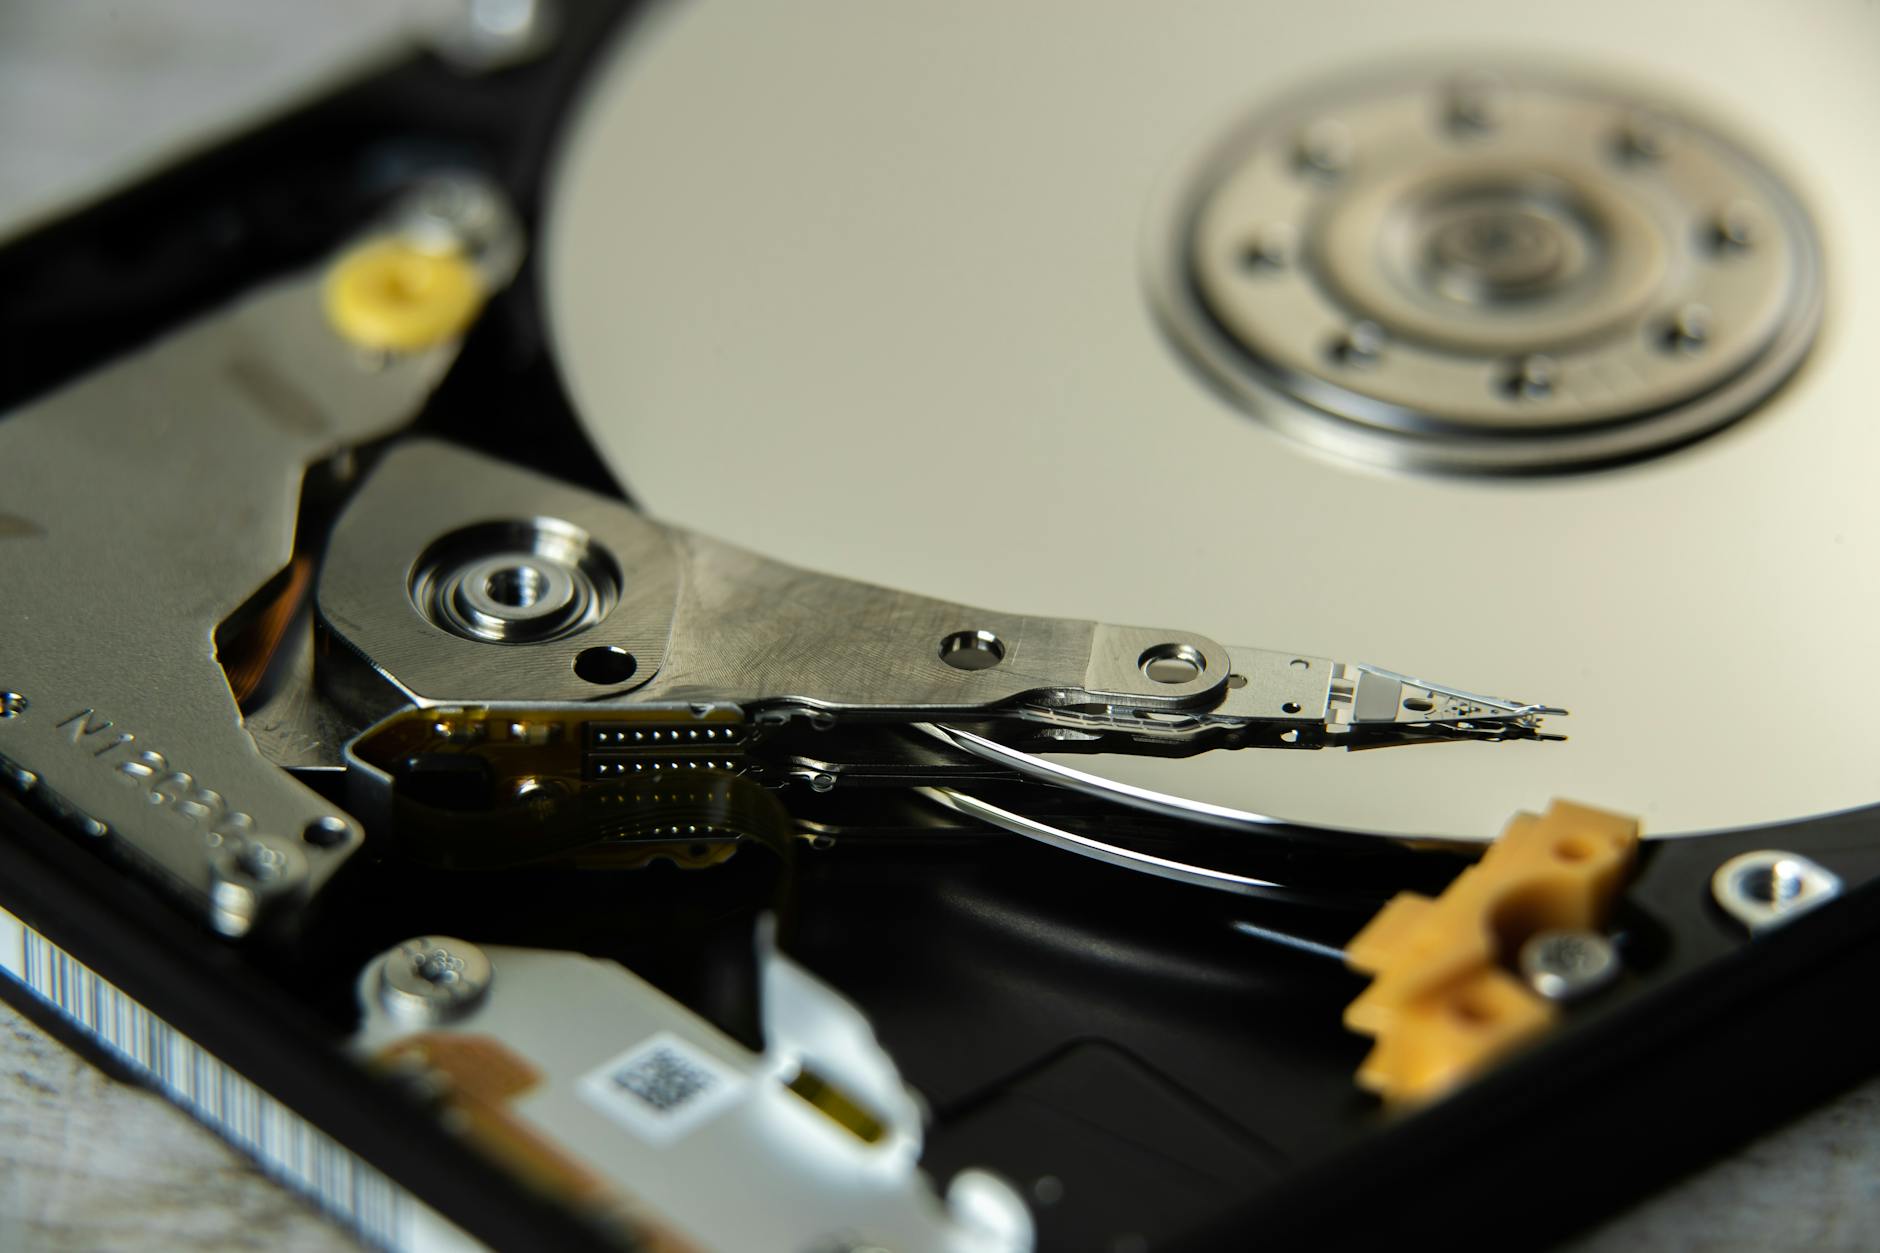 inside an open hard disk drive